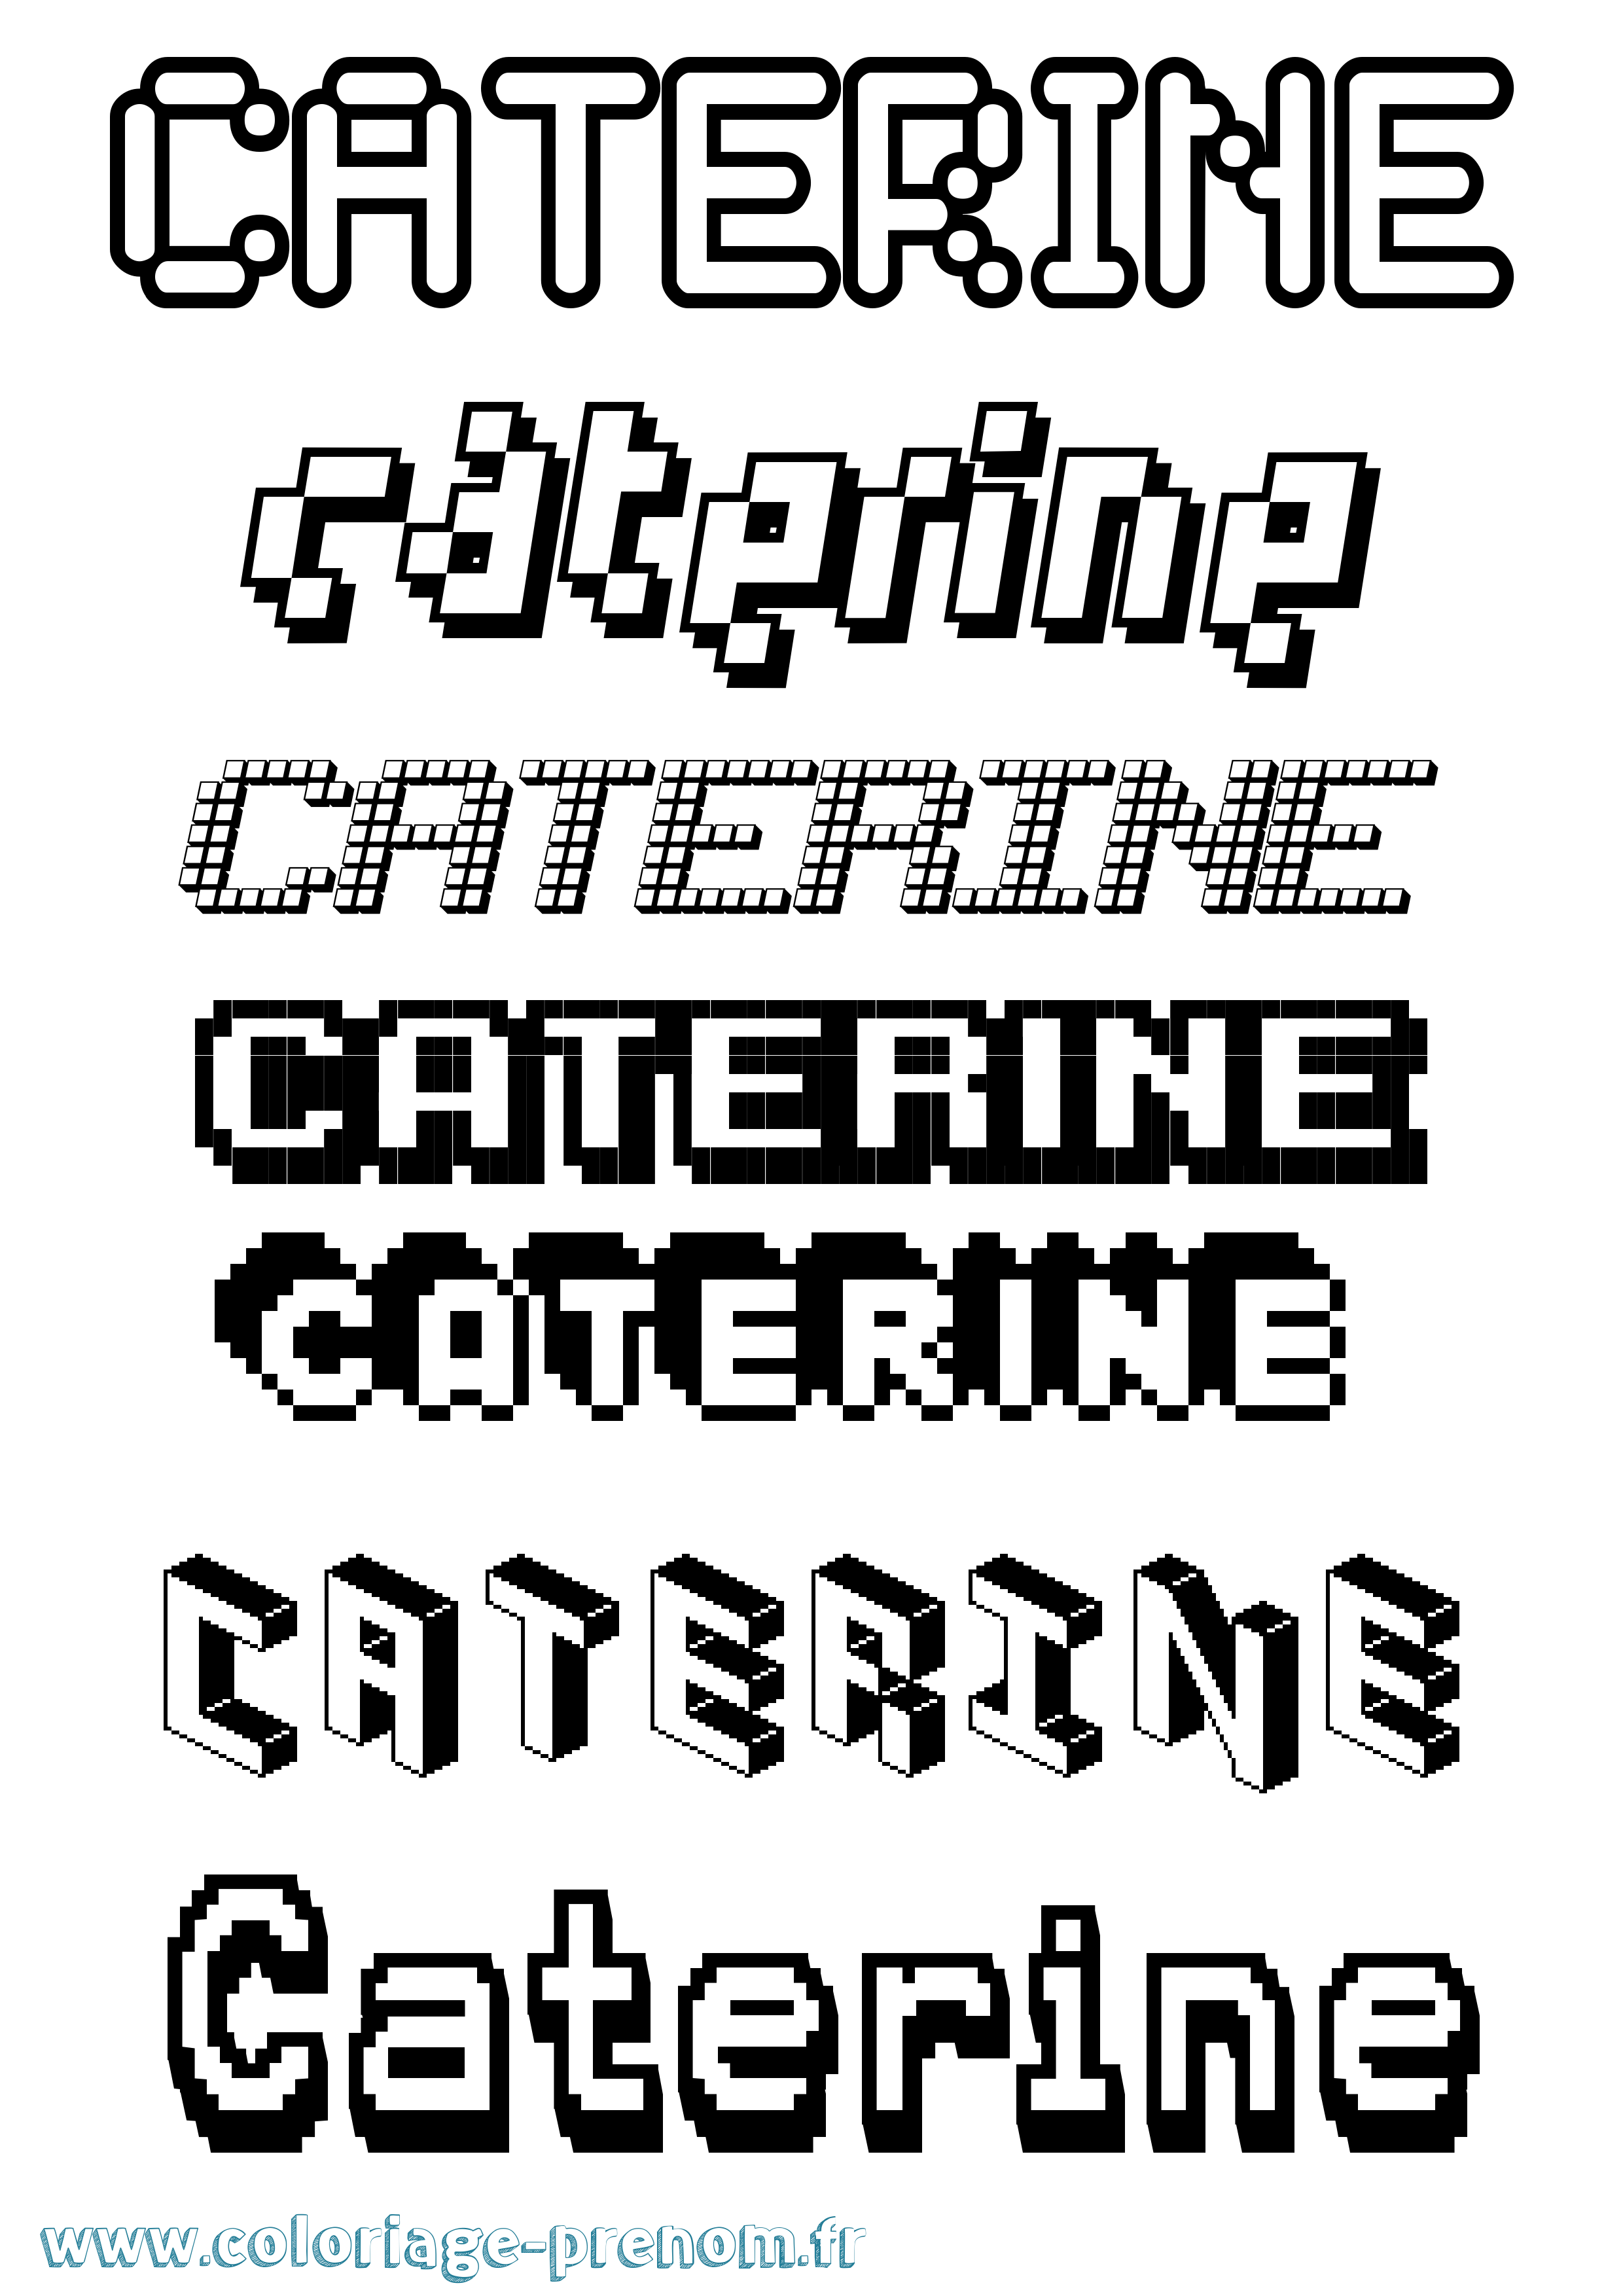 Coloriage prénom Caterine Pixel